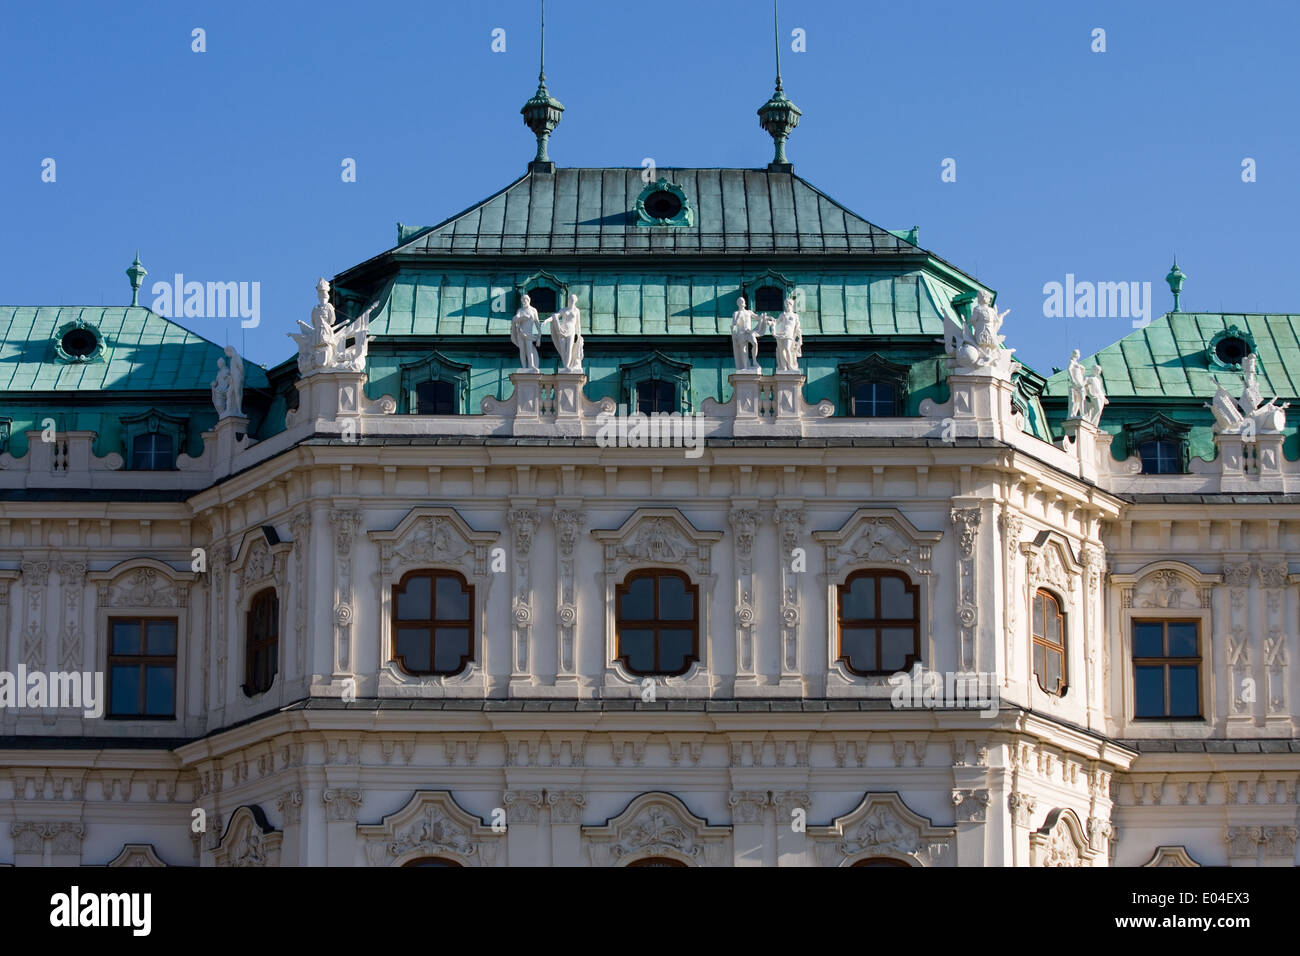 Detailaufnahme, Schloss Belvedere, Wien Österreich Foto Stock